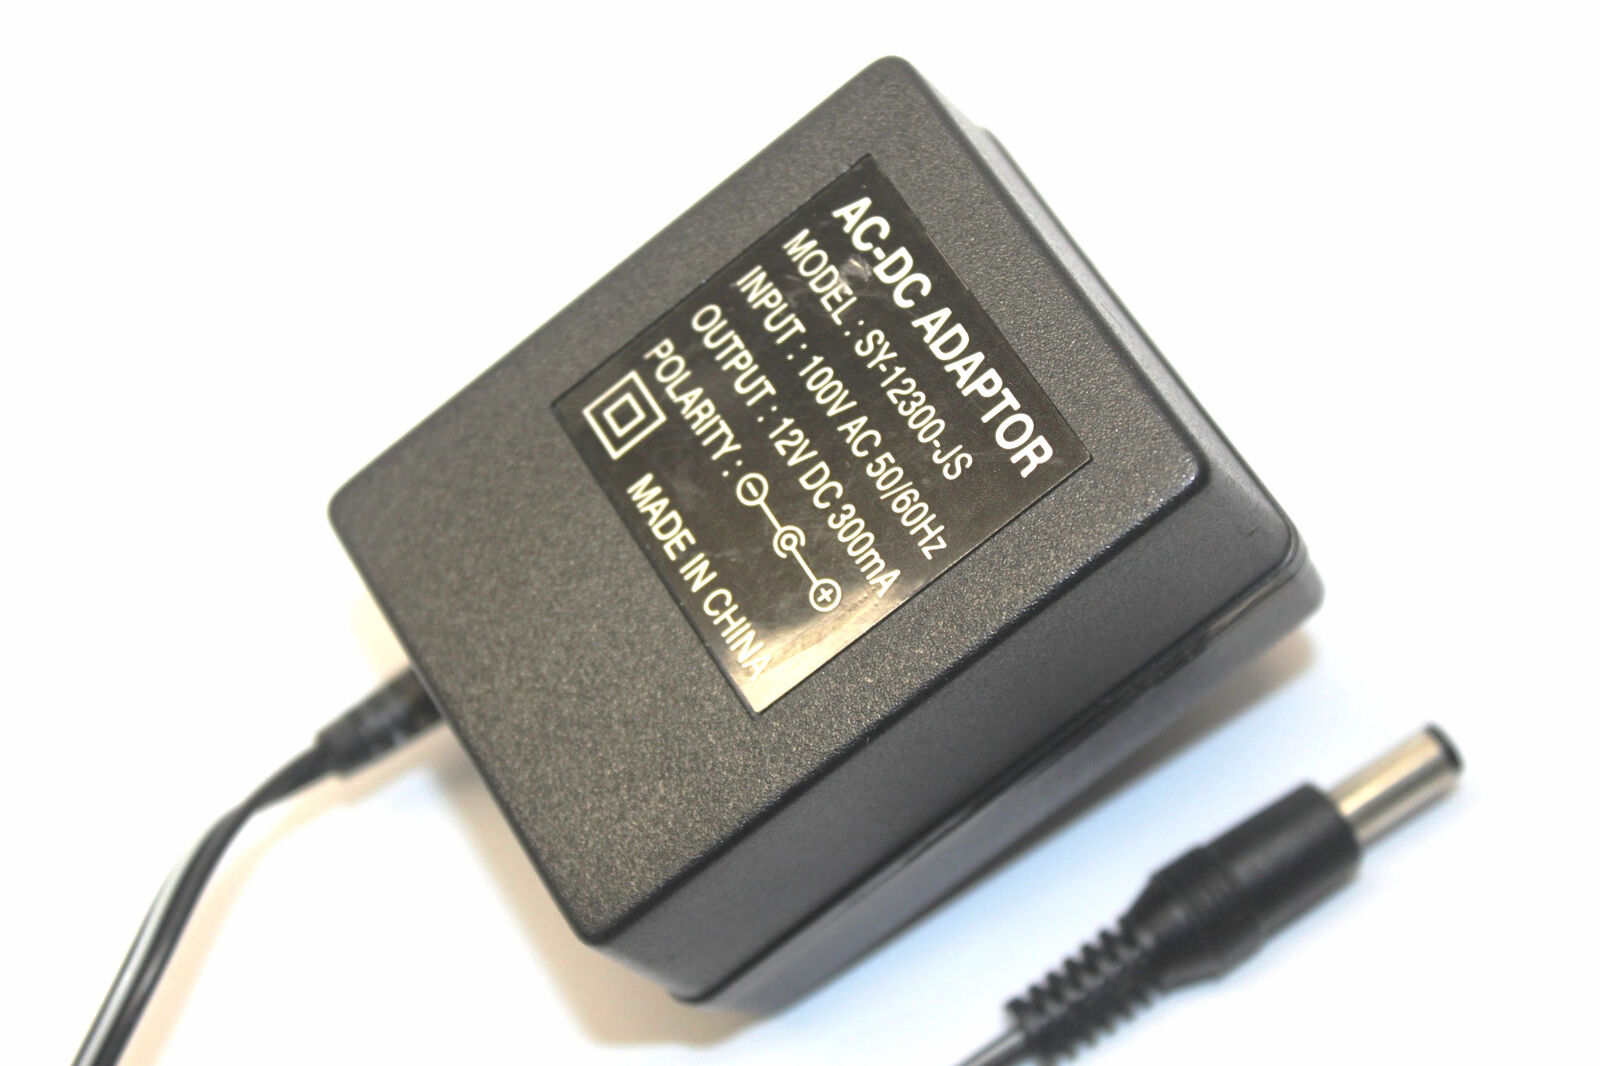 New 12V 300mA SY-12300-JS Power Supply Ac Adapter